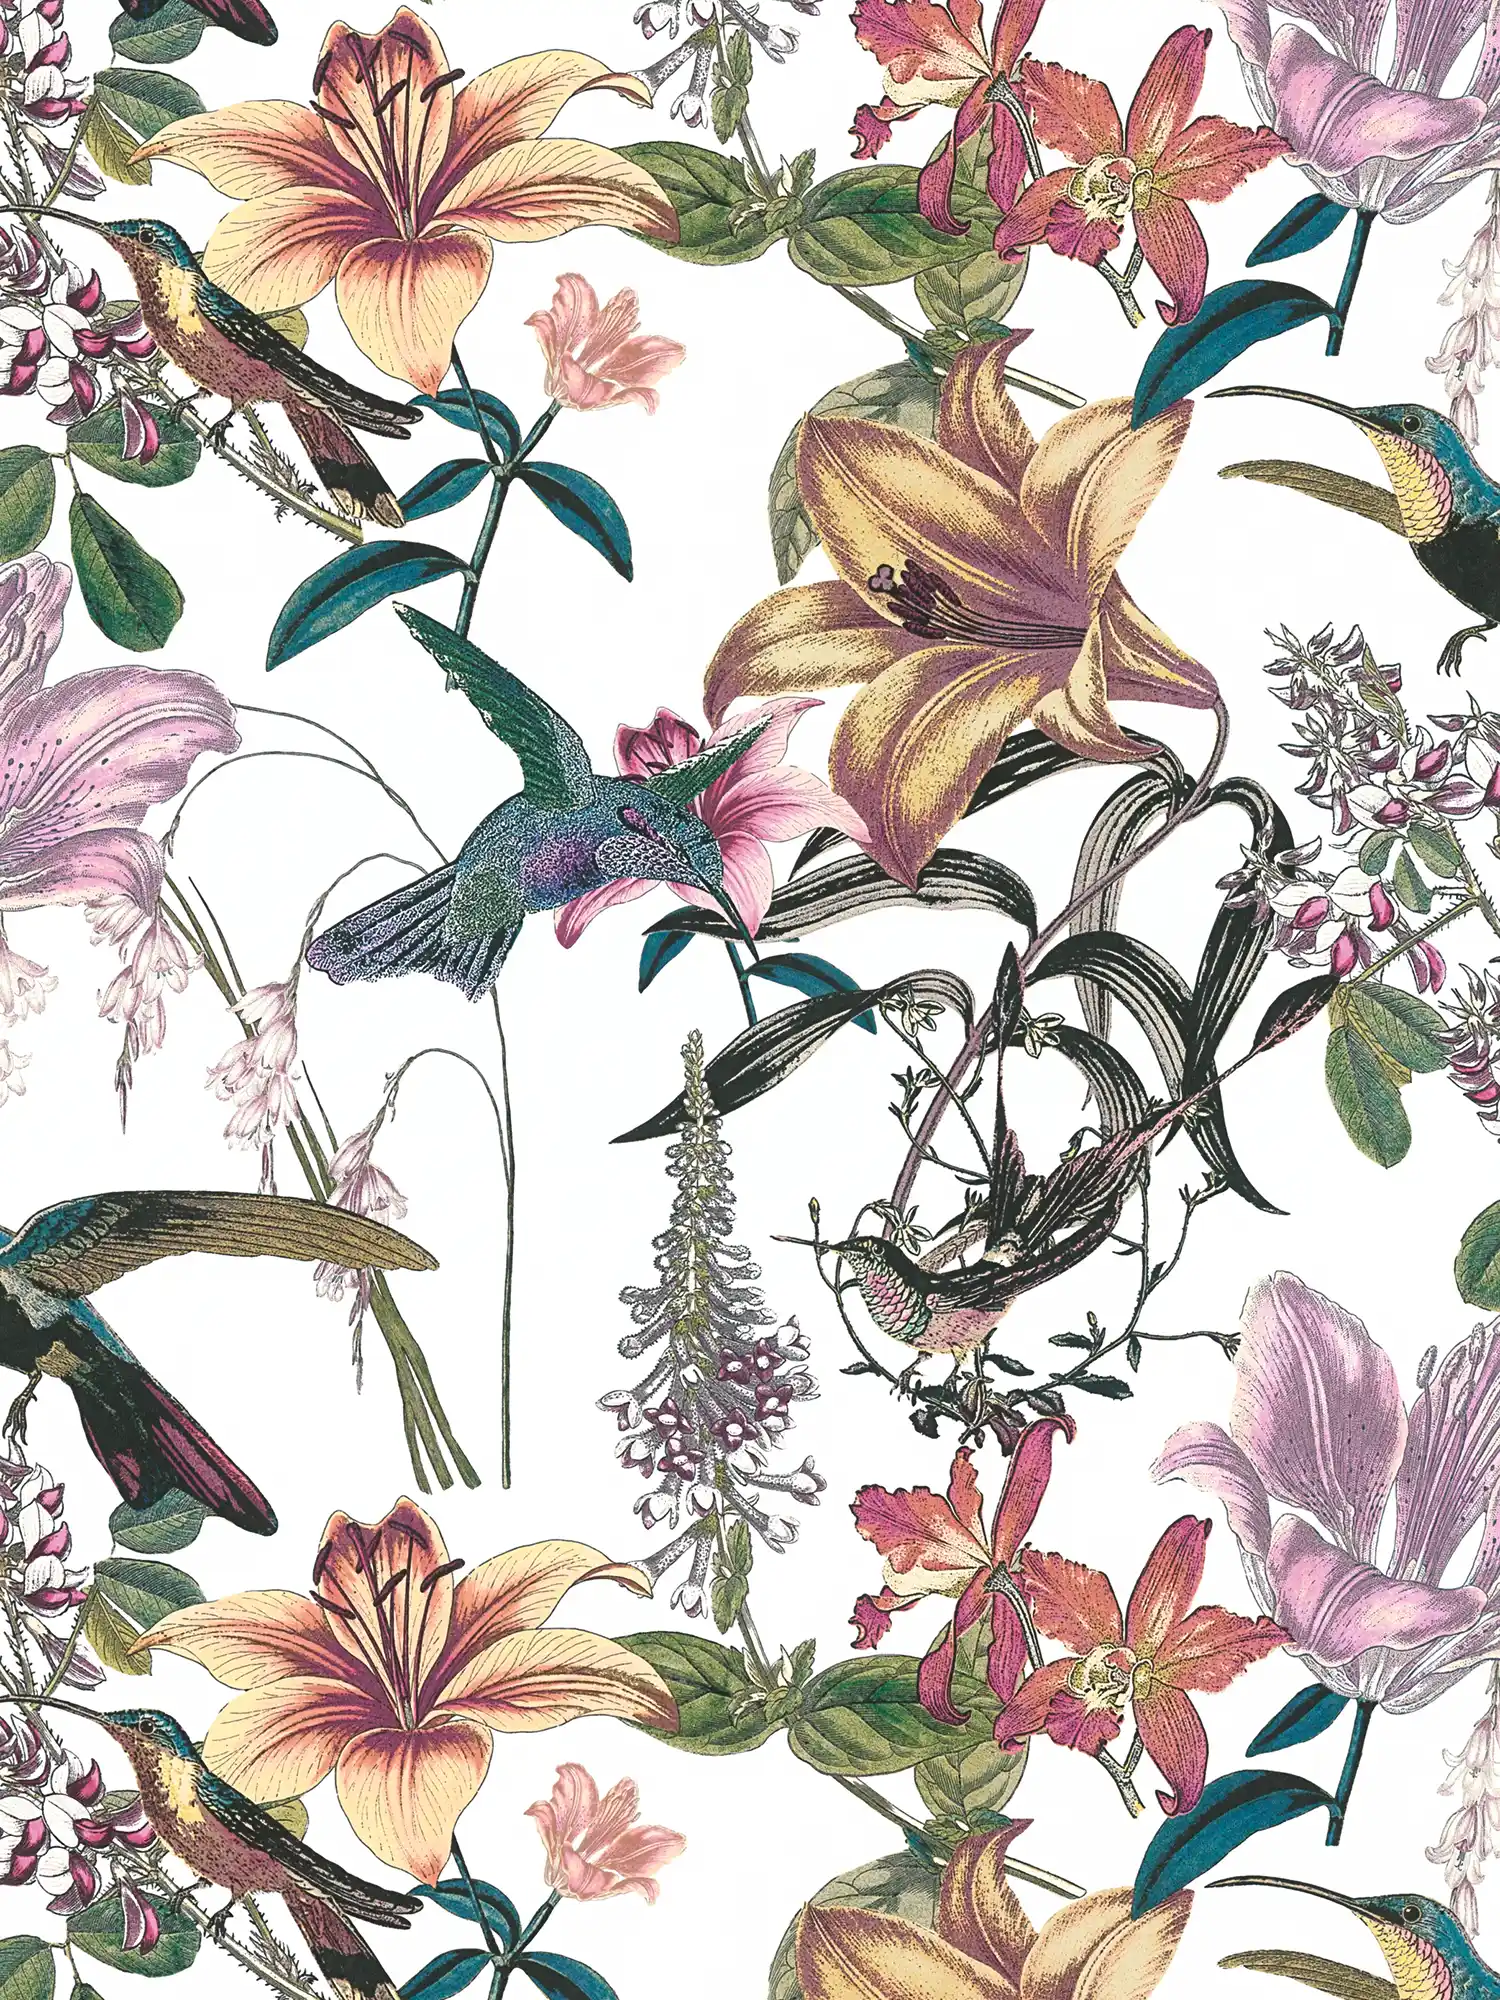 Bunte Blumentapete mit Kolibri Design – Bunt, Grün, Gelb
